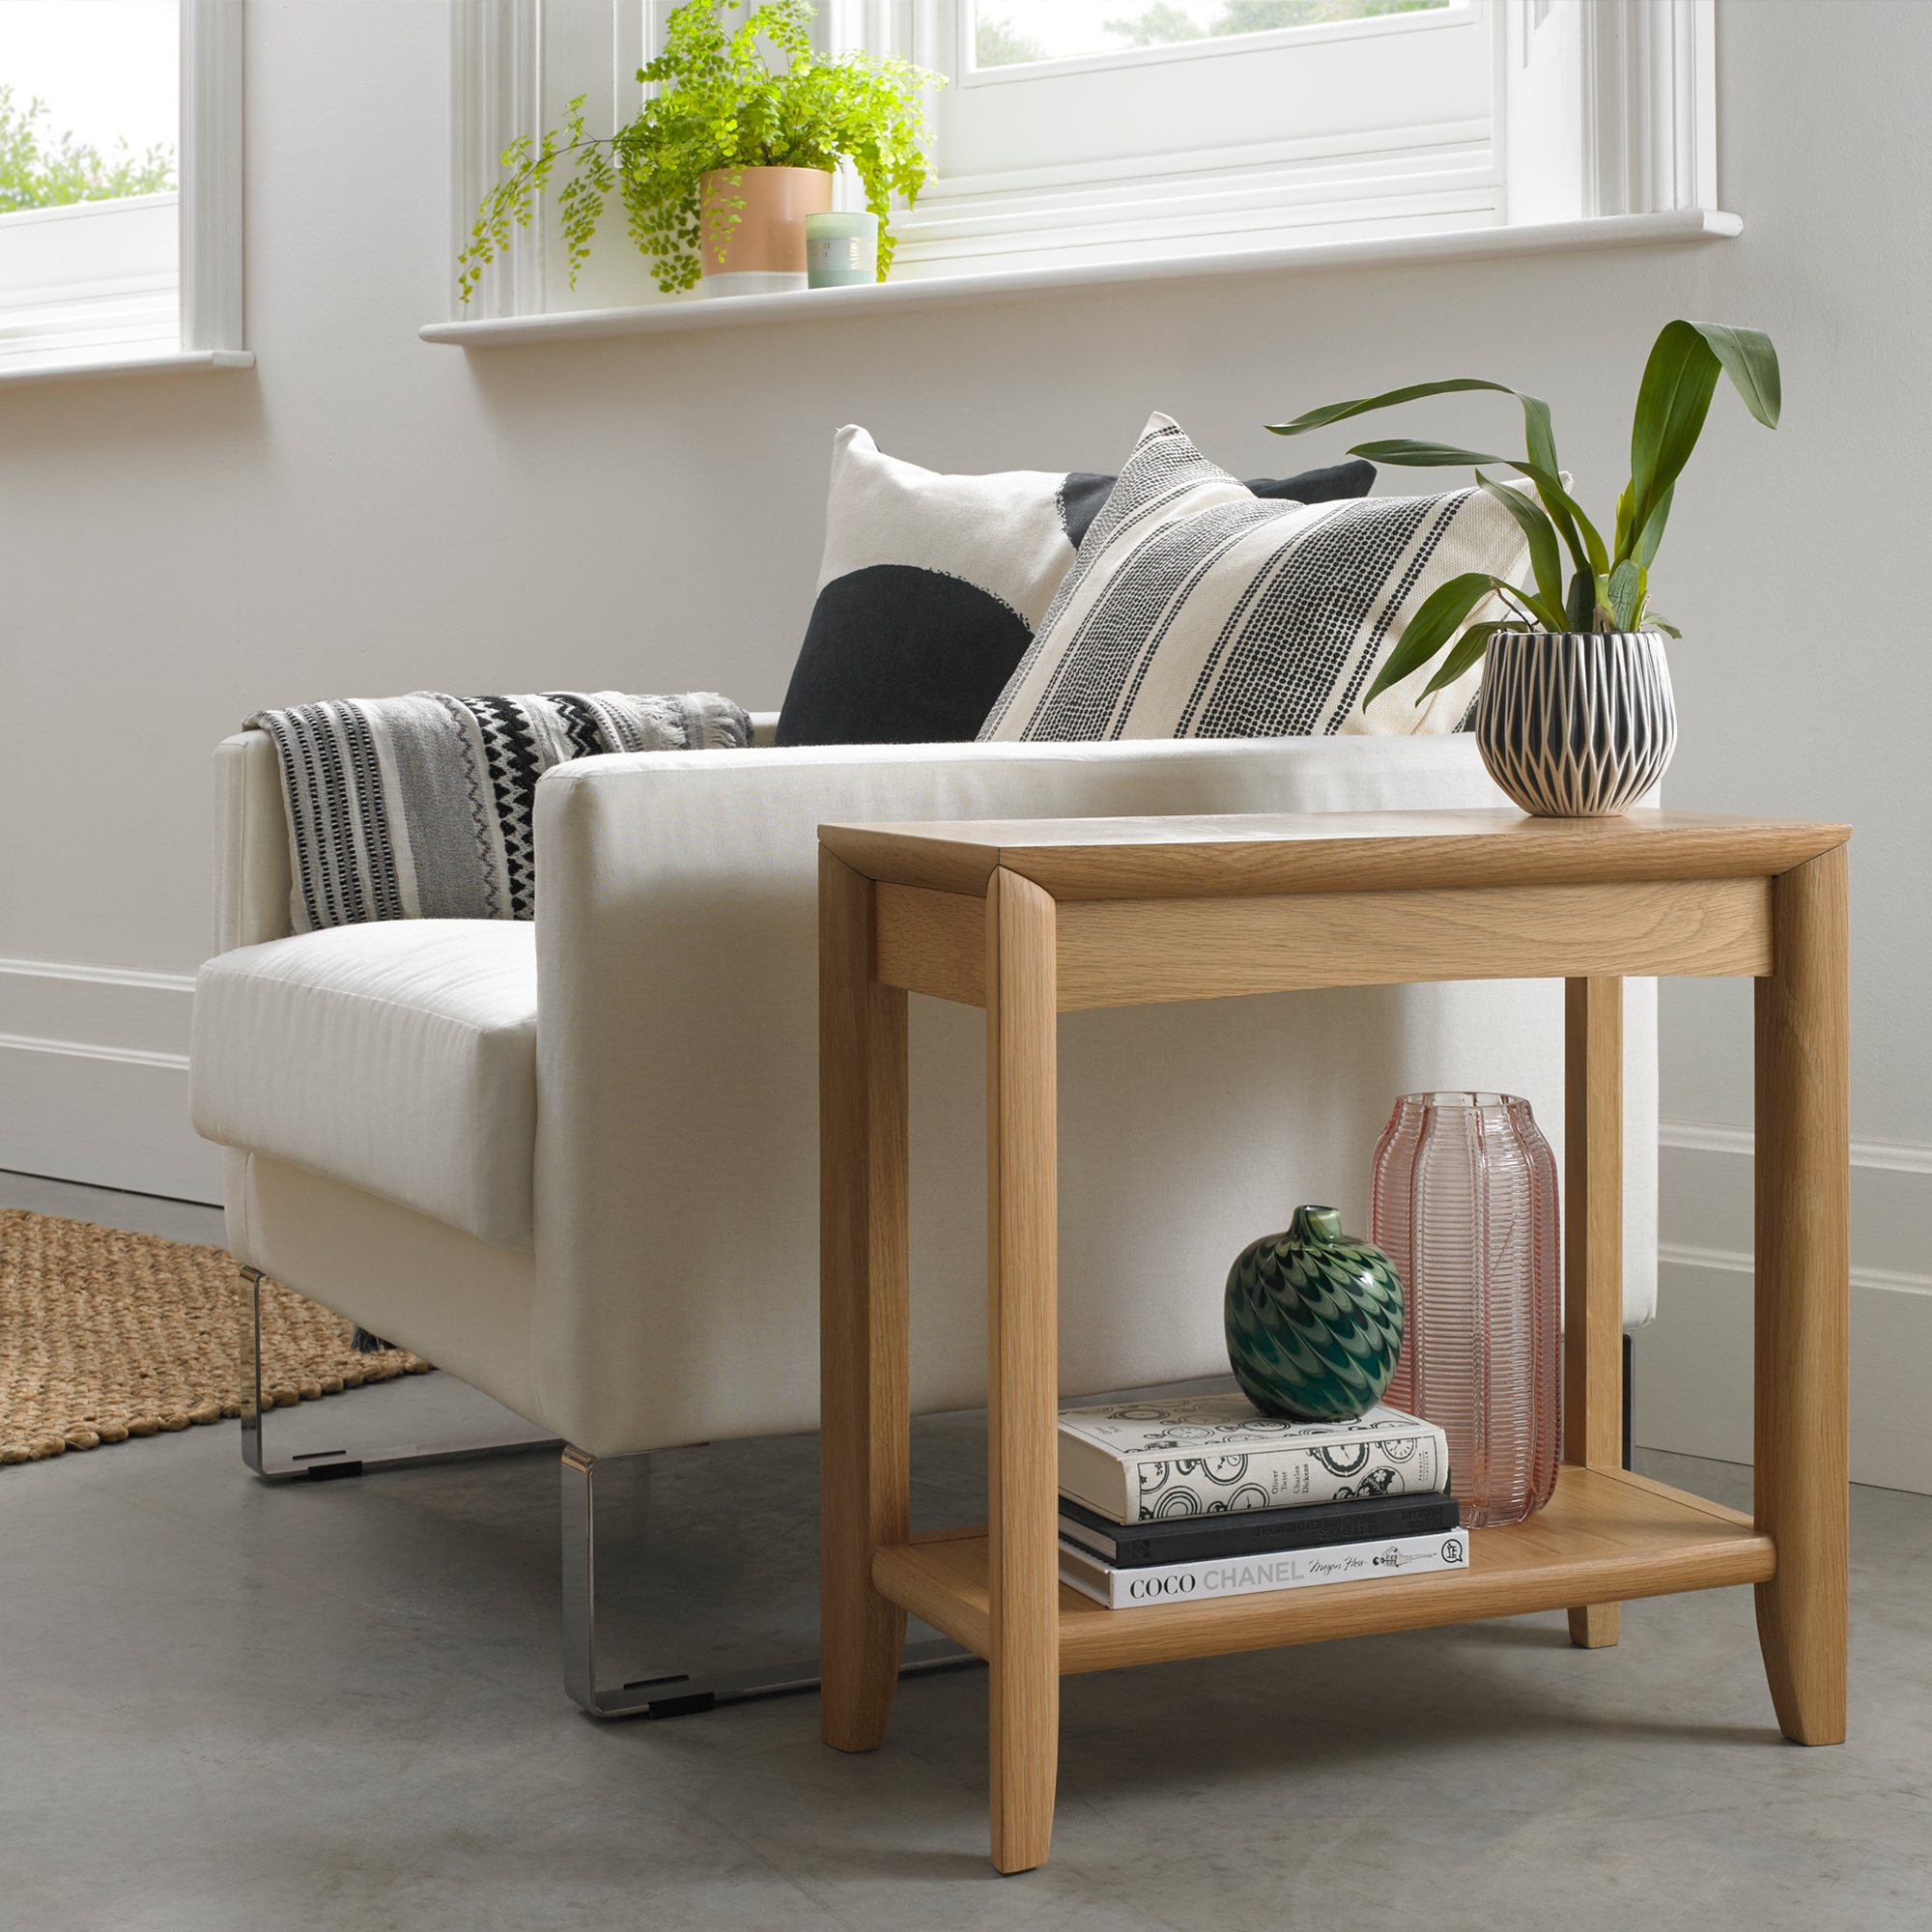 oak side tables for living room united kingdom, save 50% - kirche